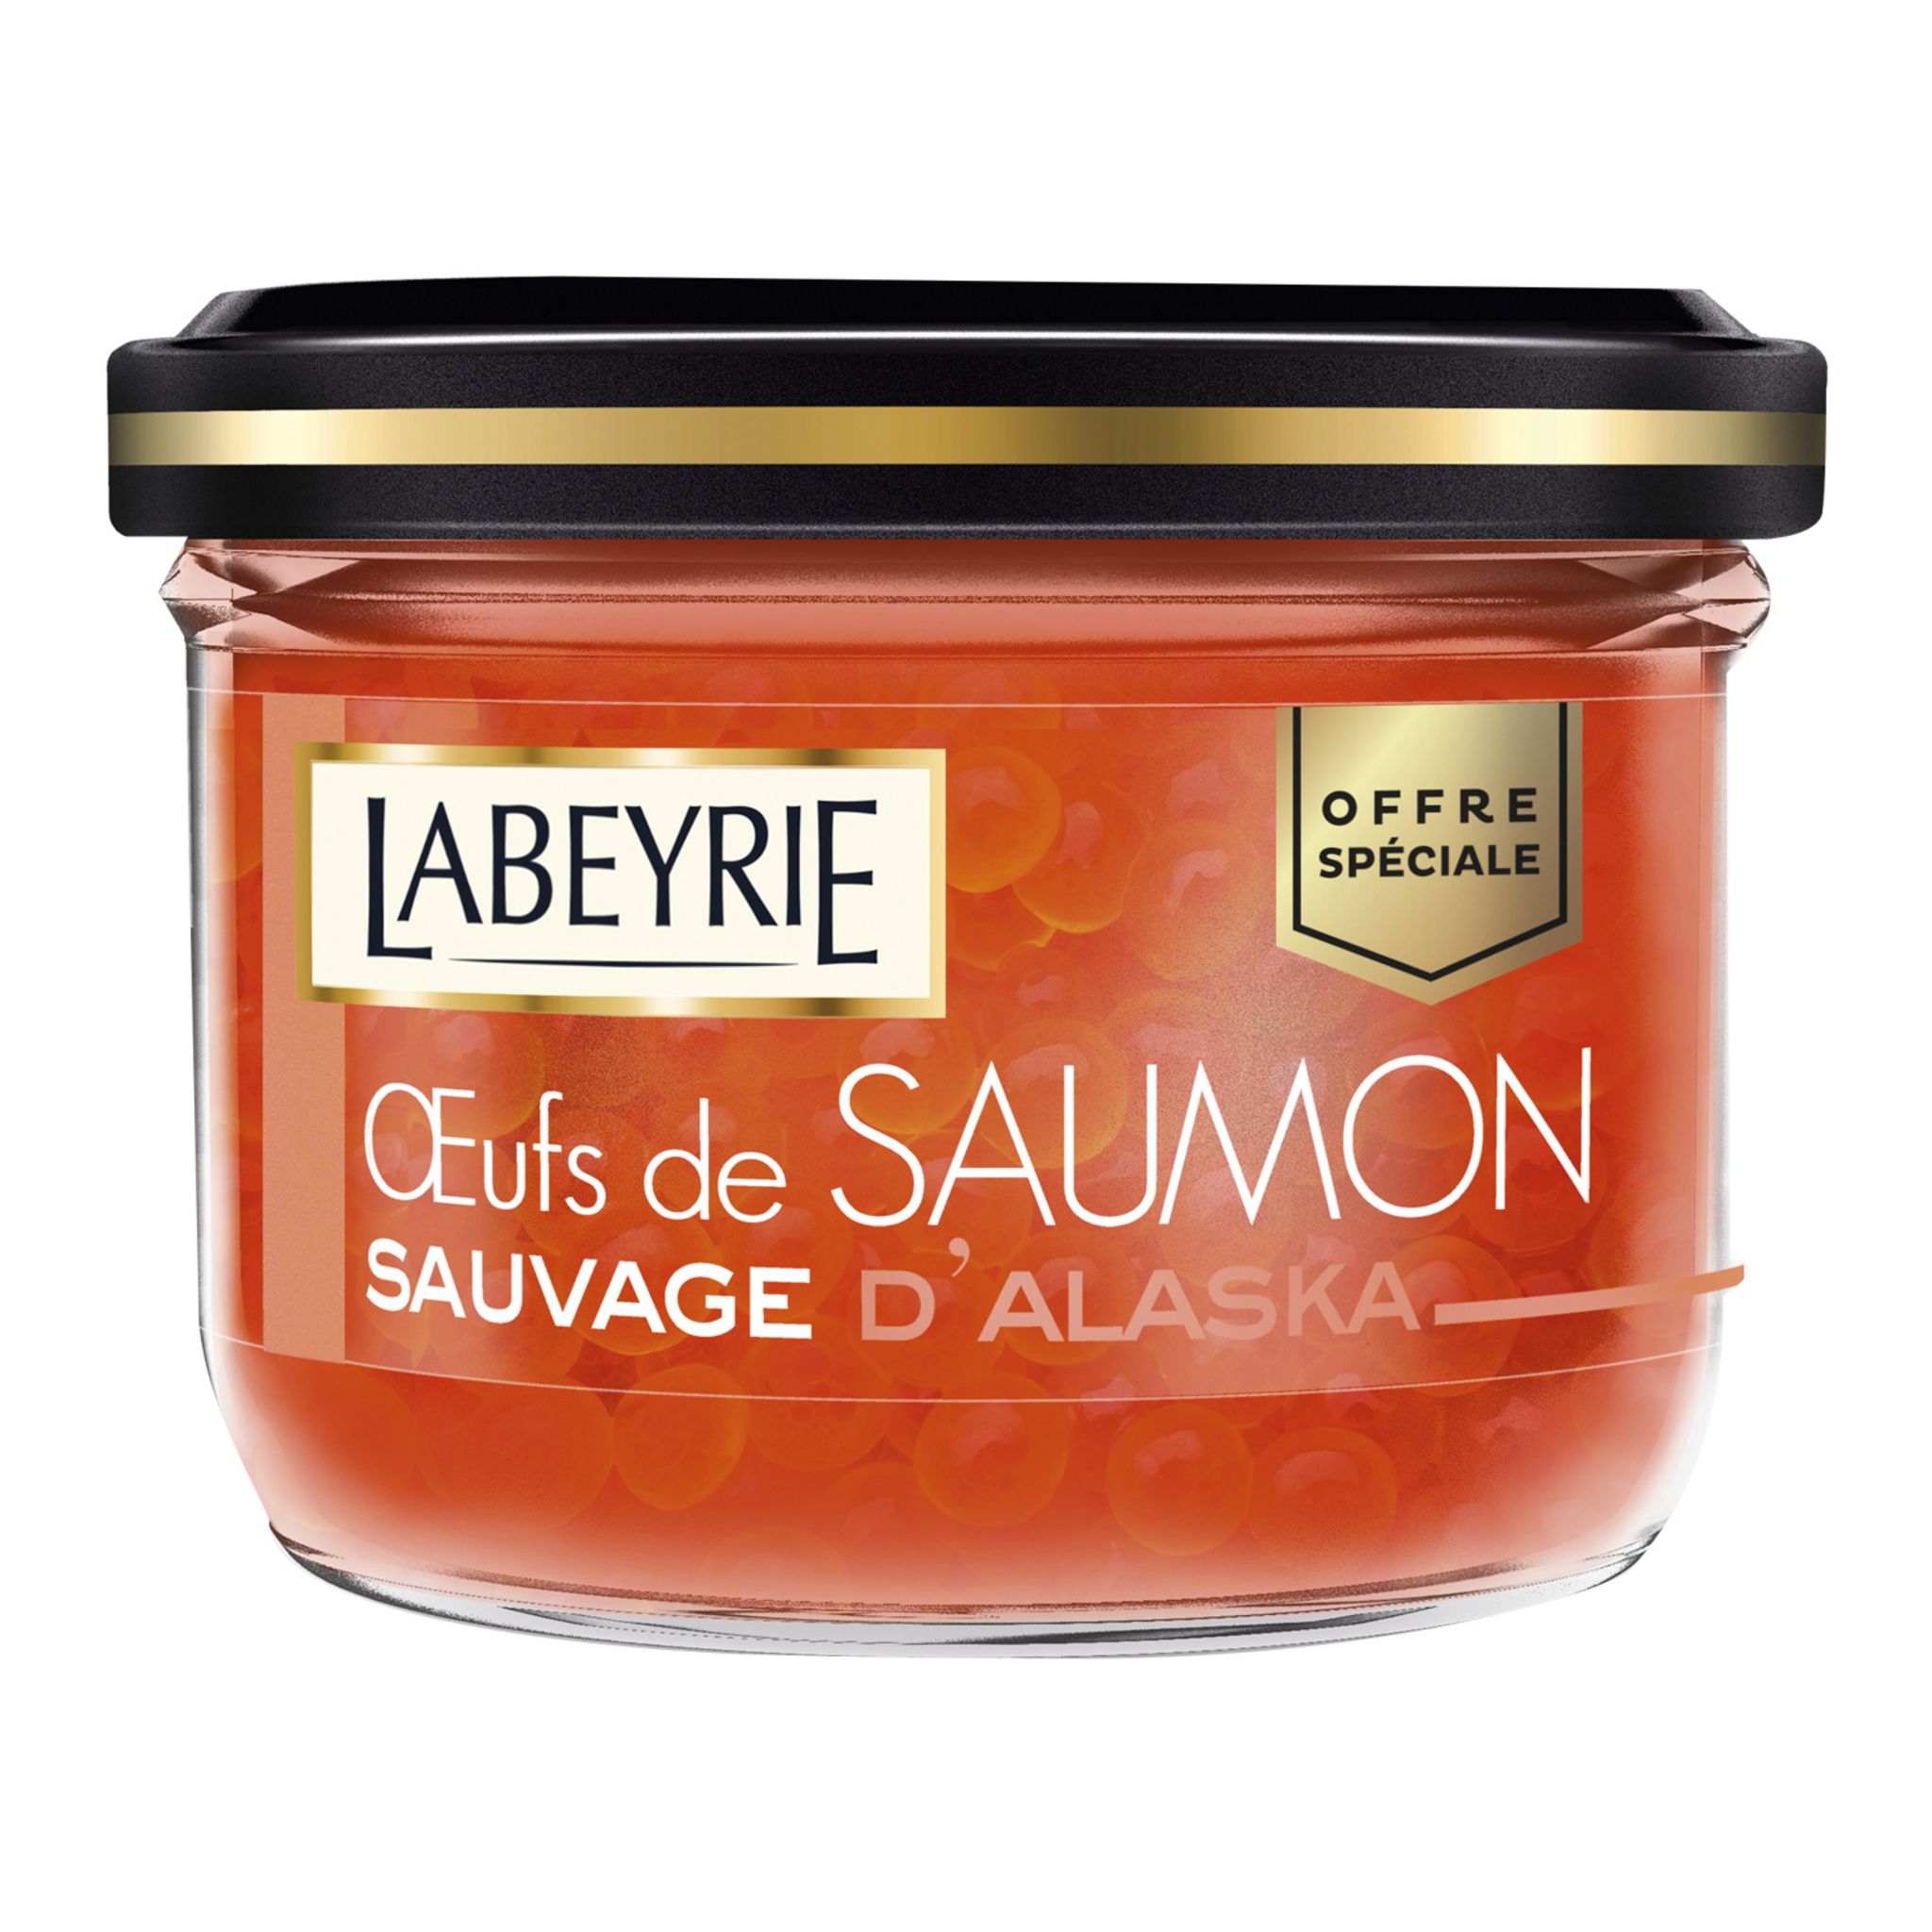 LABEYRIE Labeyrie oeufs de saumon 80g +10%offert pas cher 